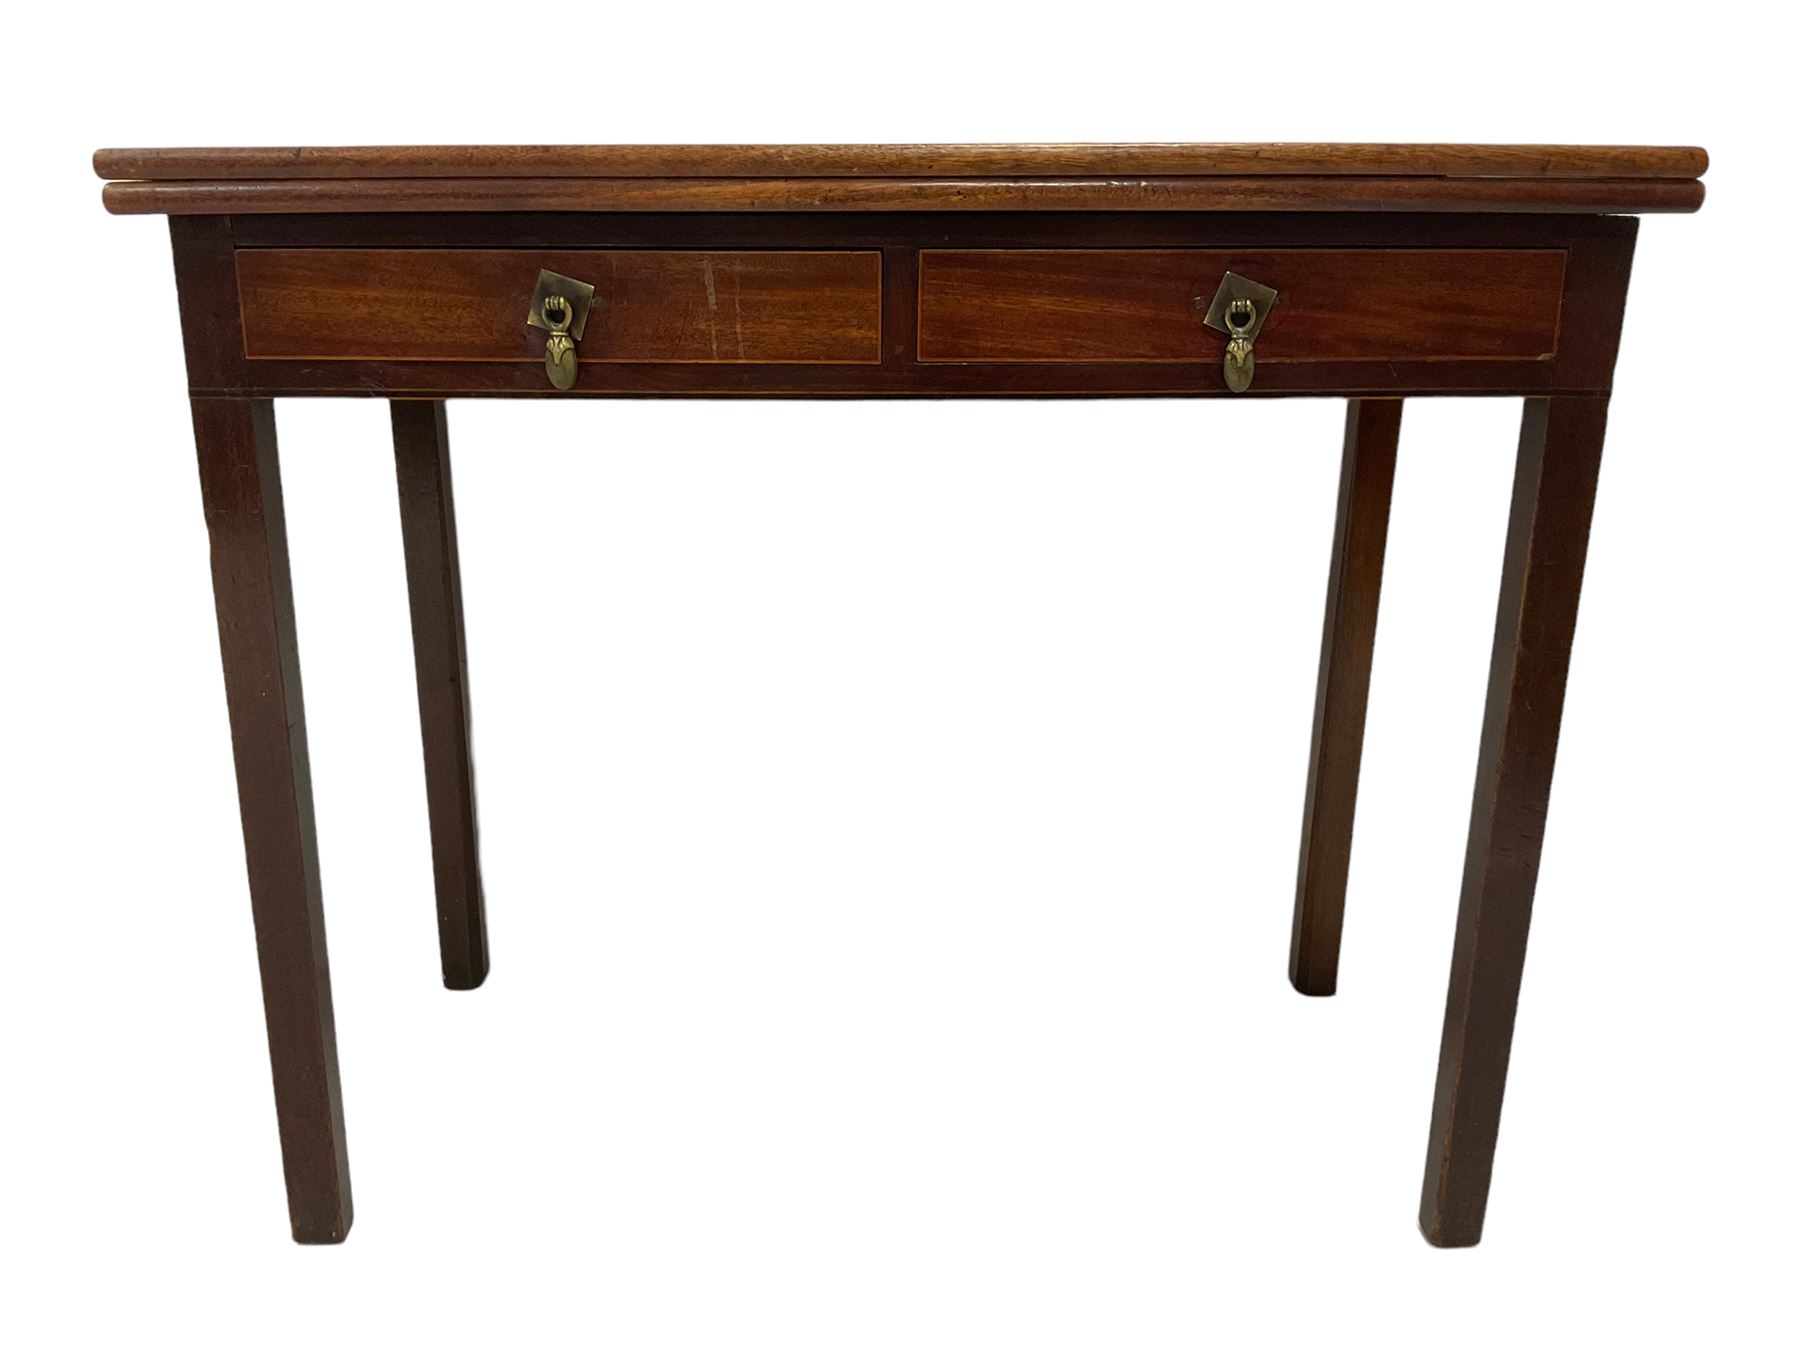 19th century mahogany tea table - Image 4 of 4